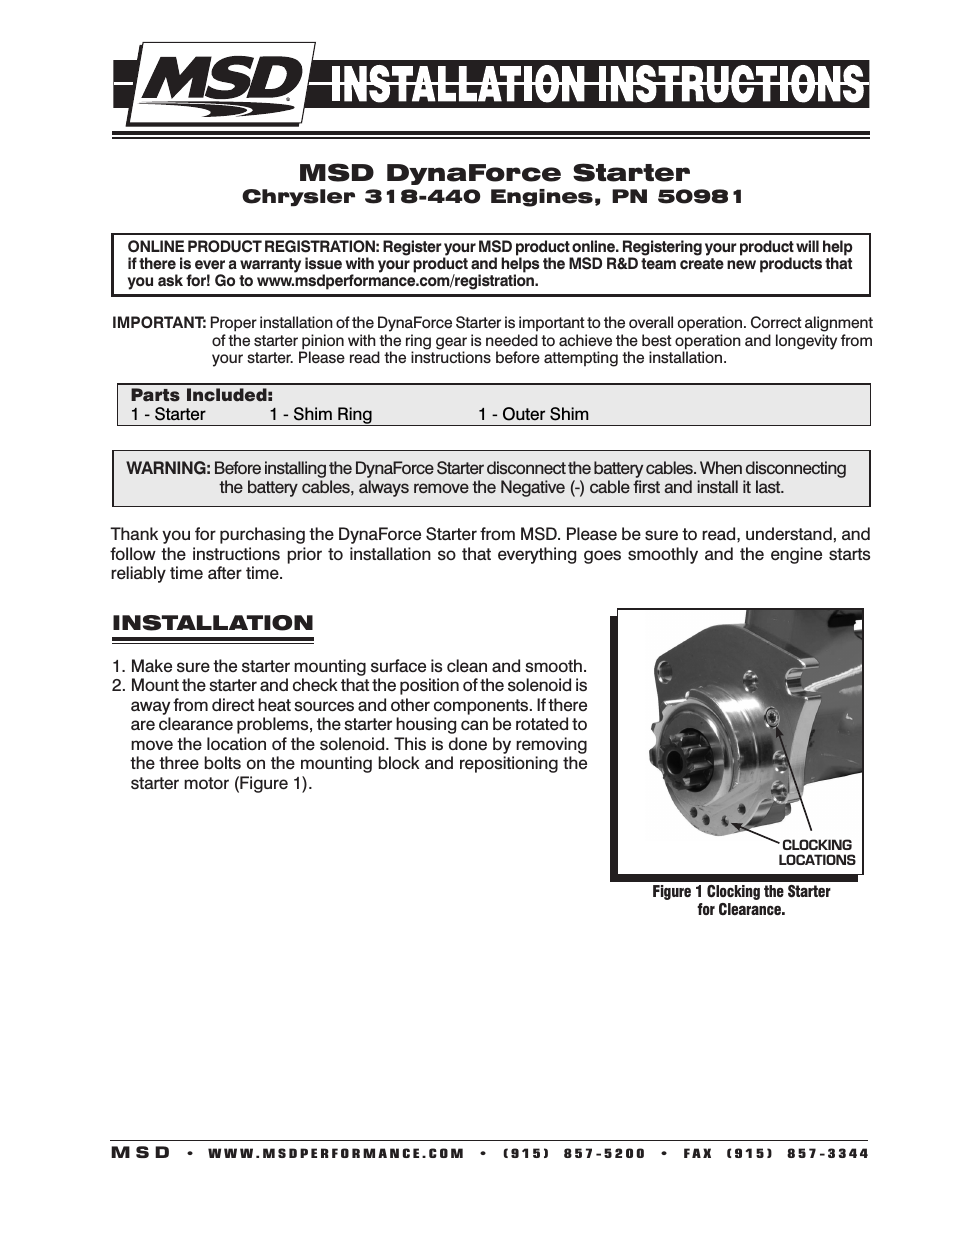 50981 DynaForce Starter, Chrysler 318-440 Engines Installation